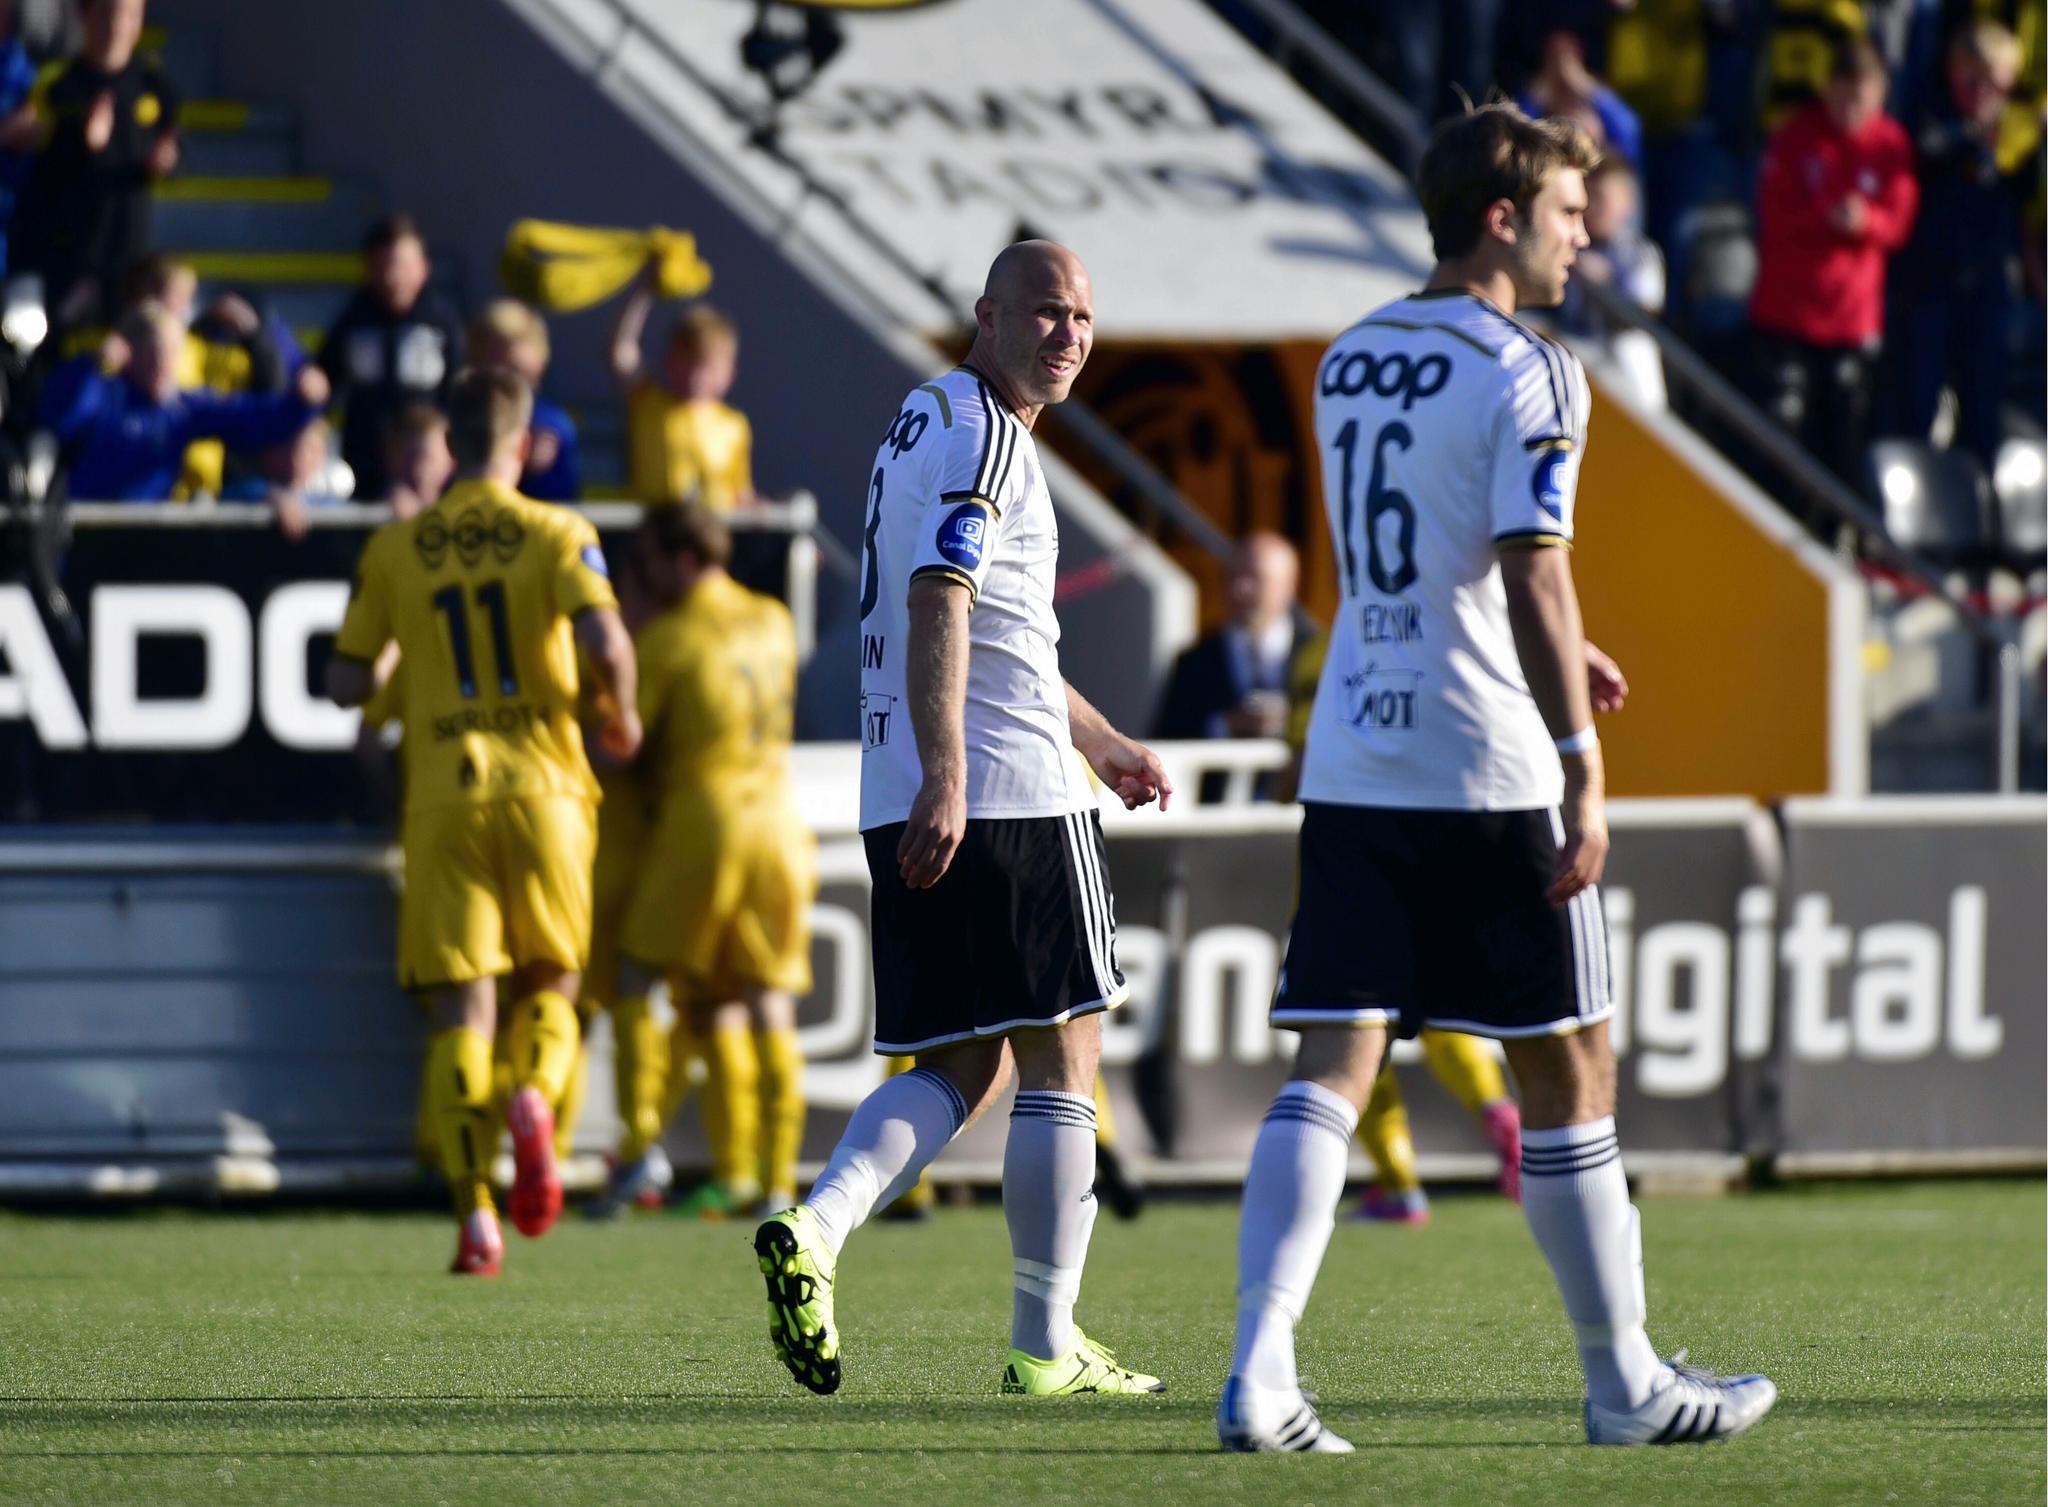 Rosenborg gikk på et overraskende tap mot Bodø/Glimt. Her fortviler Mikael Dorsin og Jørgen Skjelvik, mens Glimt-spillerne feirer i bakgrunn.